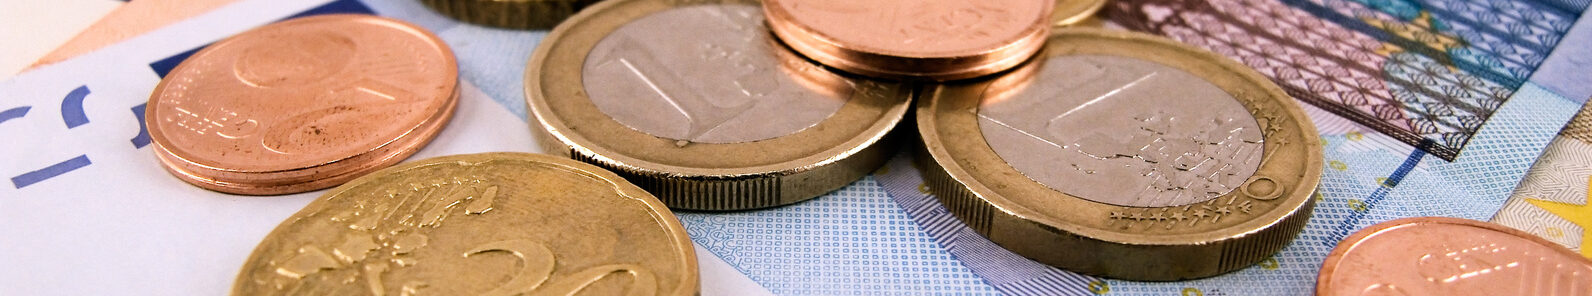 Euro Währung - Münzen und Scheine